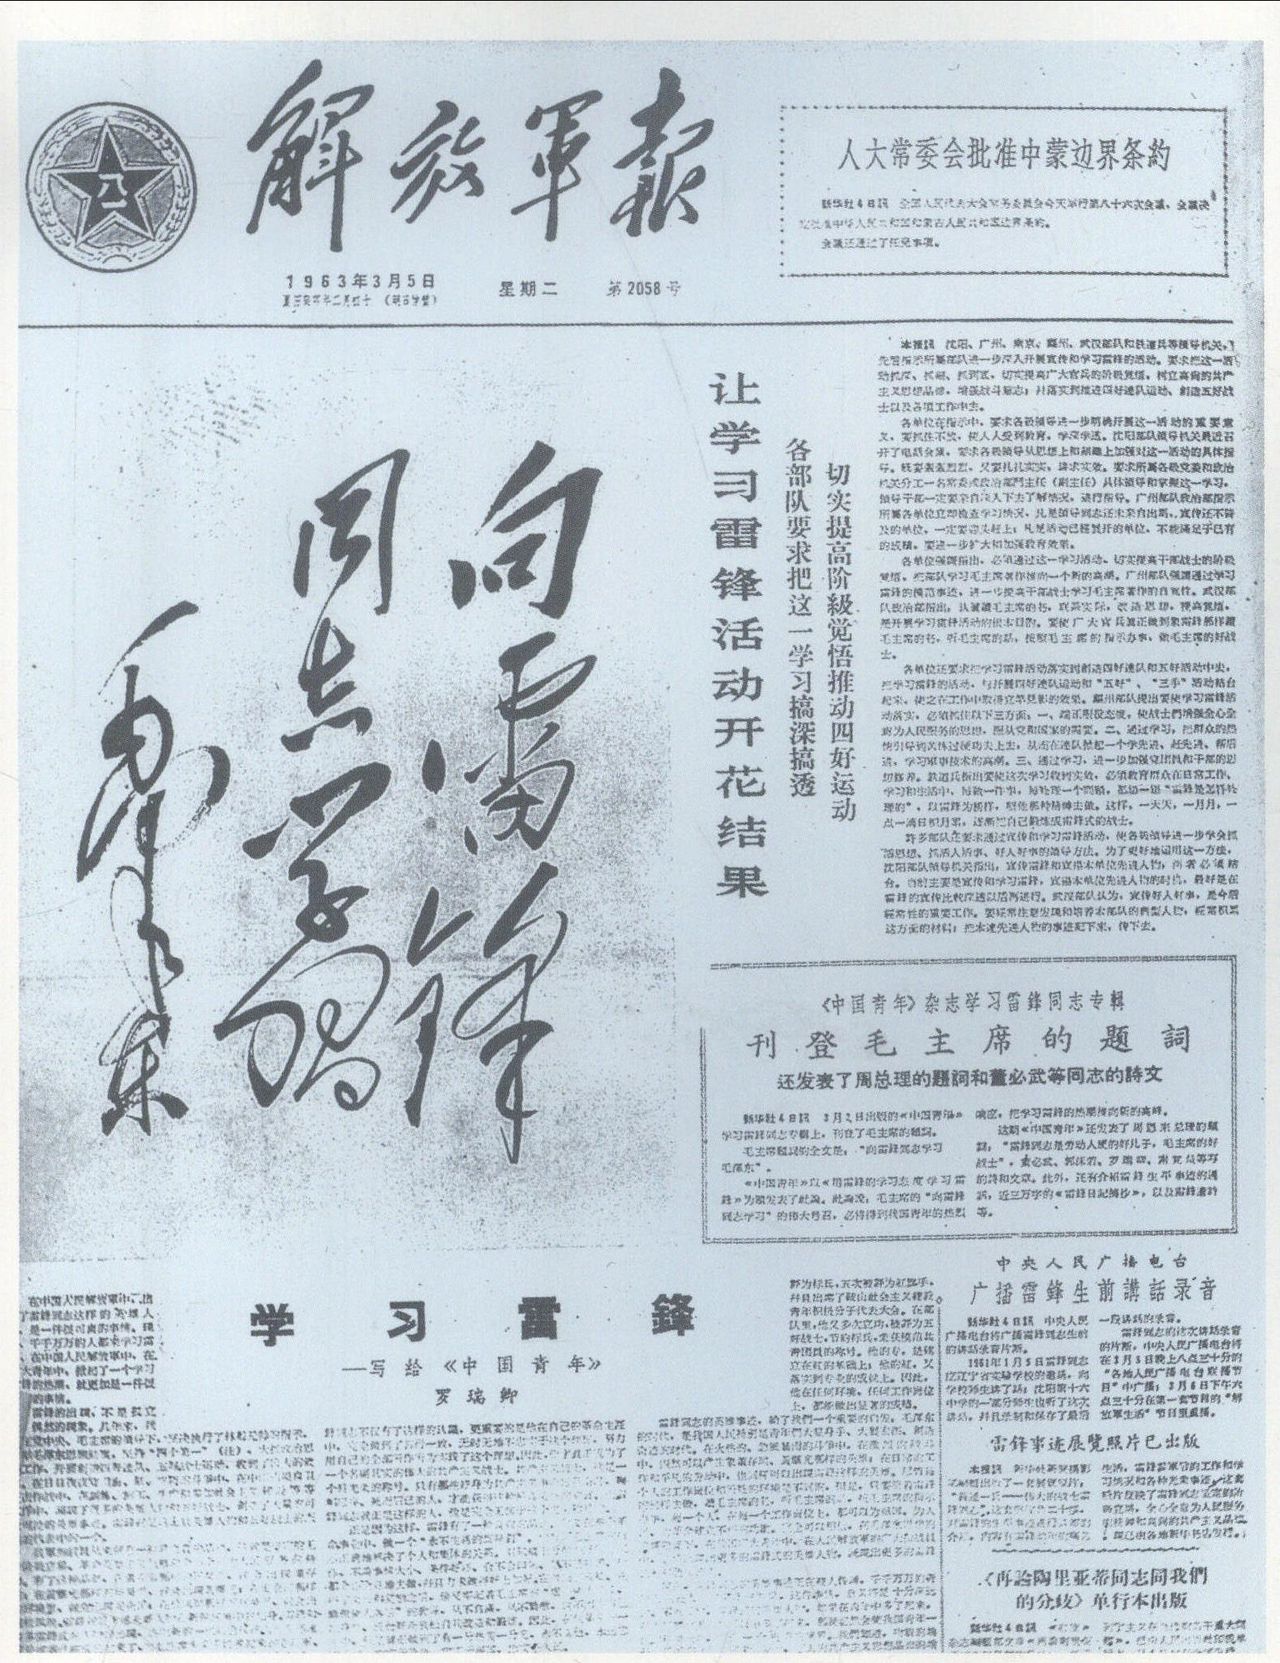 《人民日報》和《解放軍報》發表毛澤東題詞“向雷鋒同志學習”。